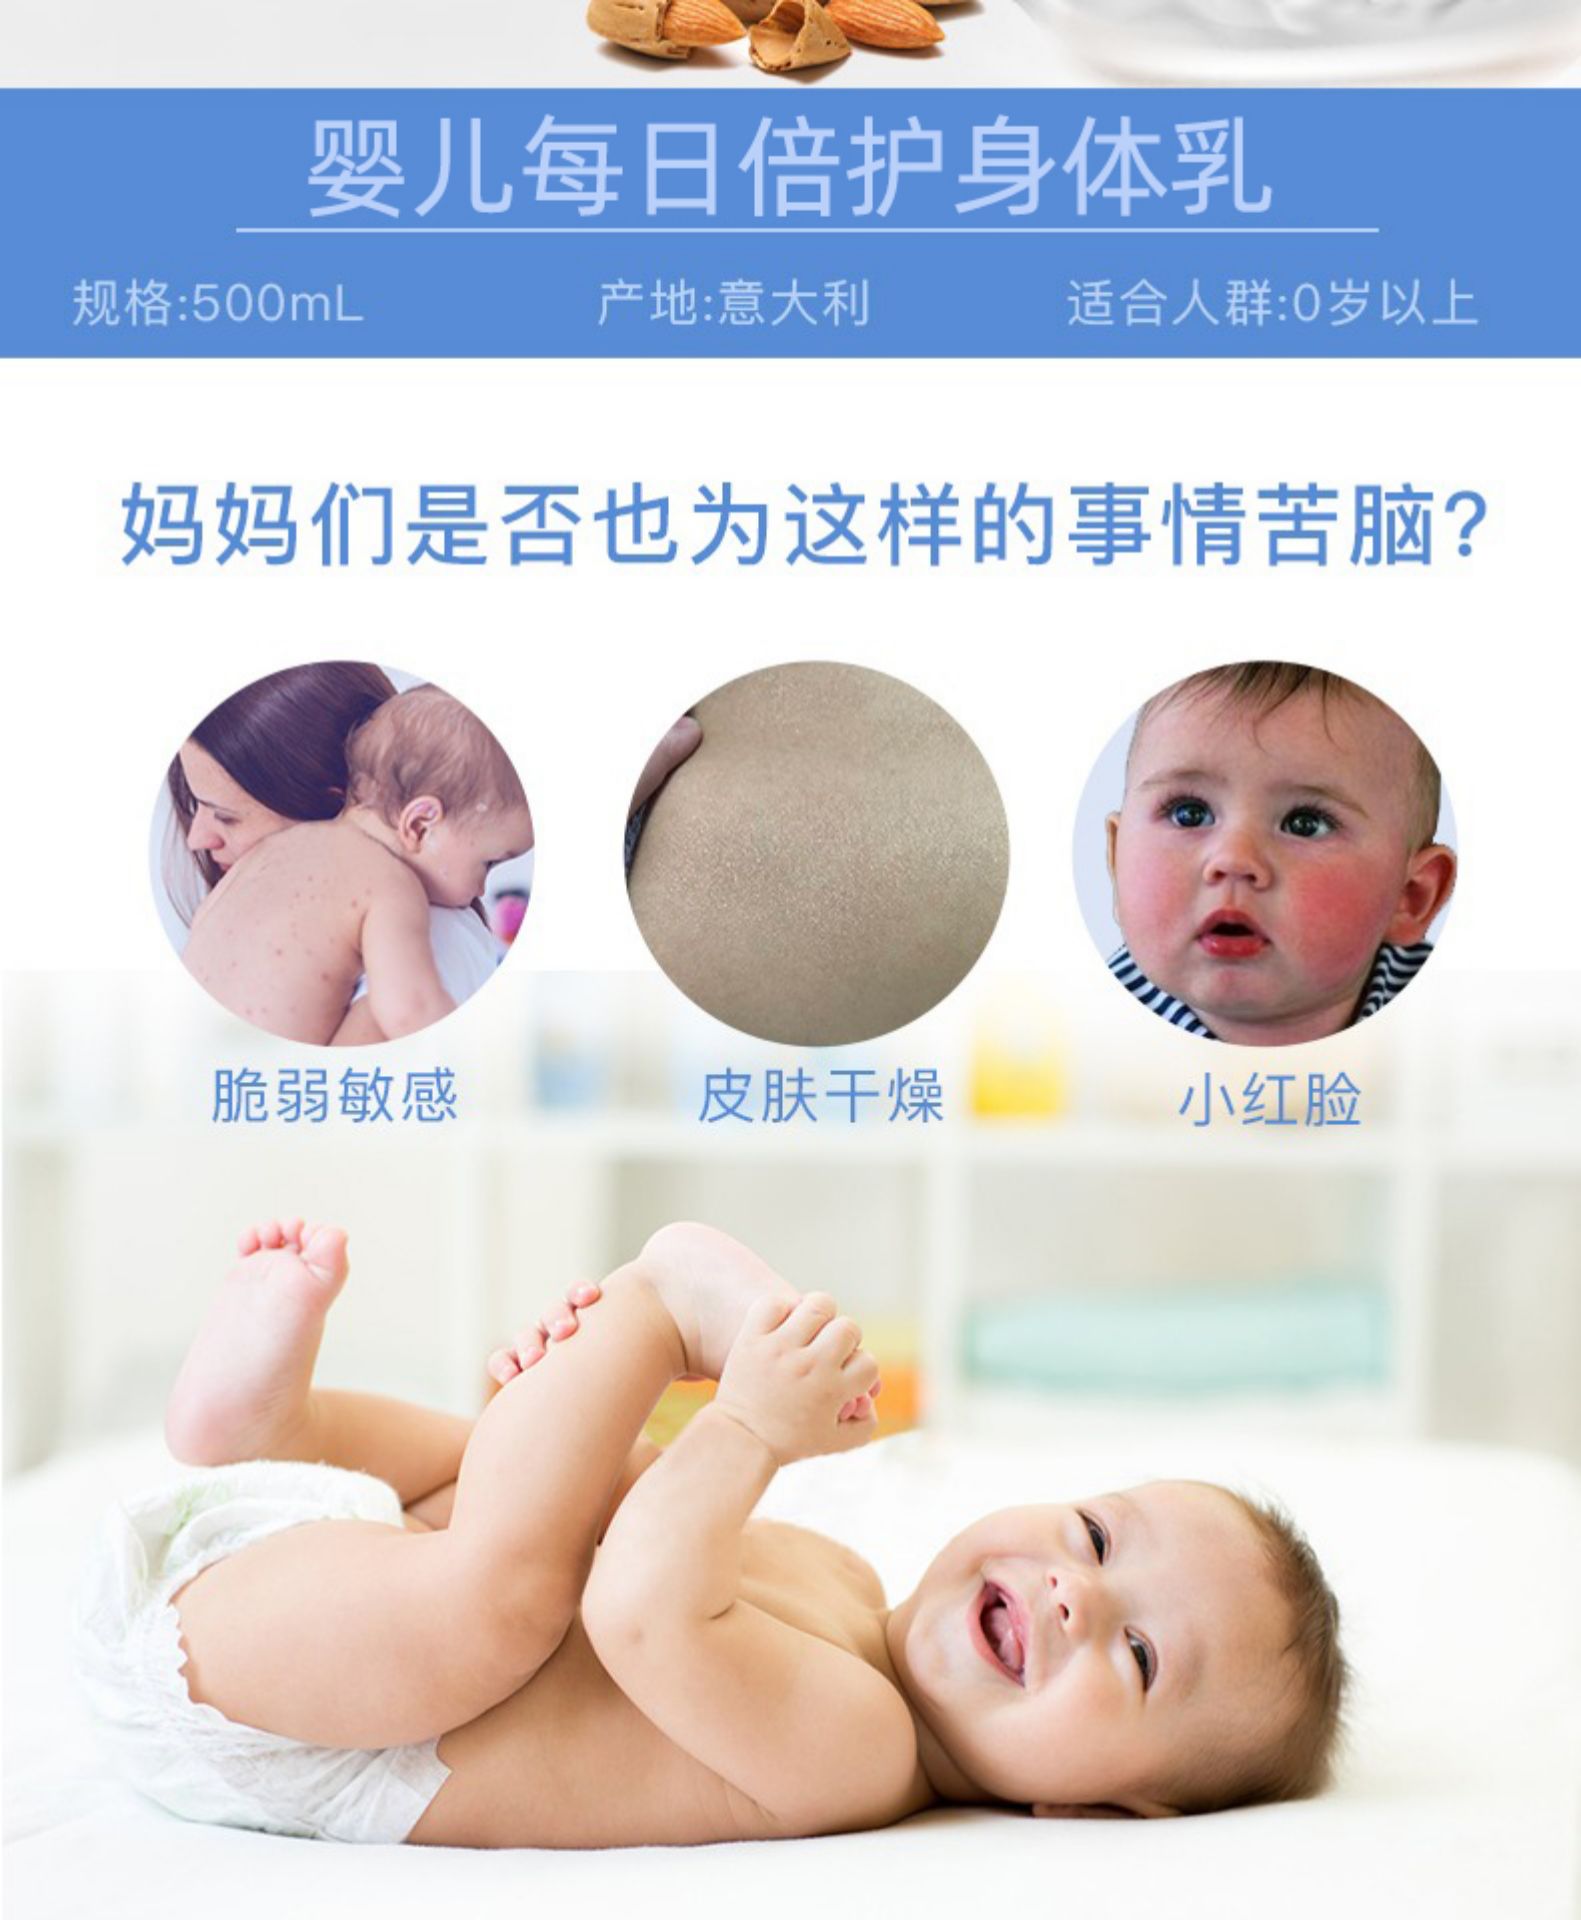 chicco智高意大利高端母婴进口婴儿宝宝身体乳润肤霜 200ml详情图4